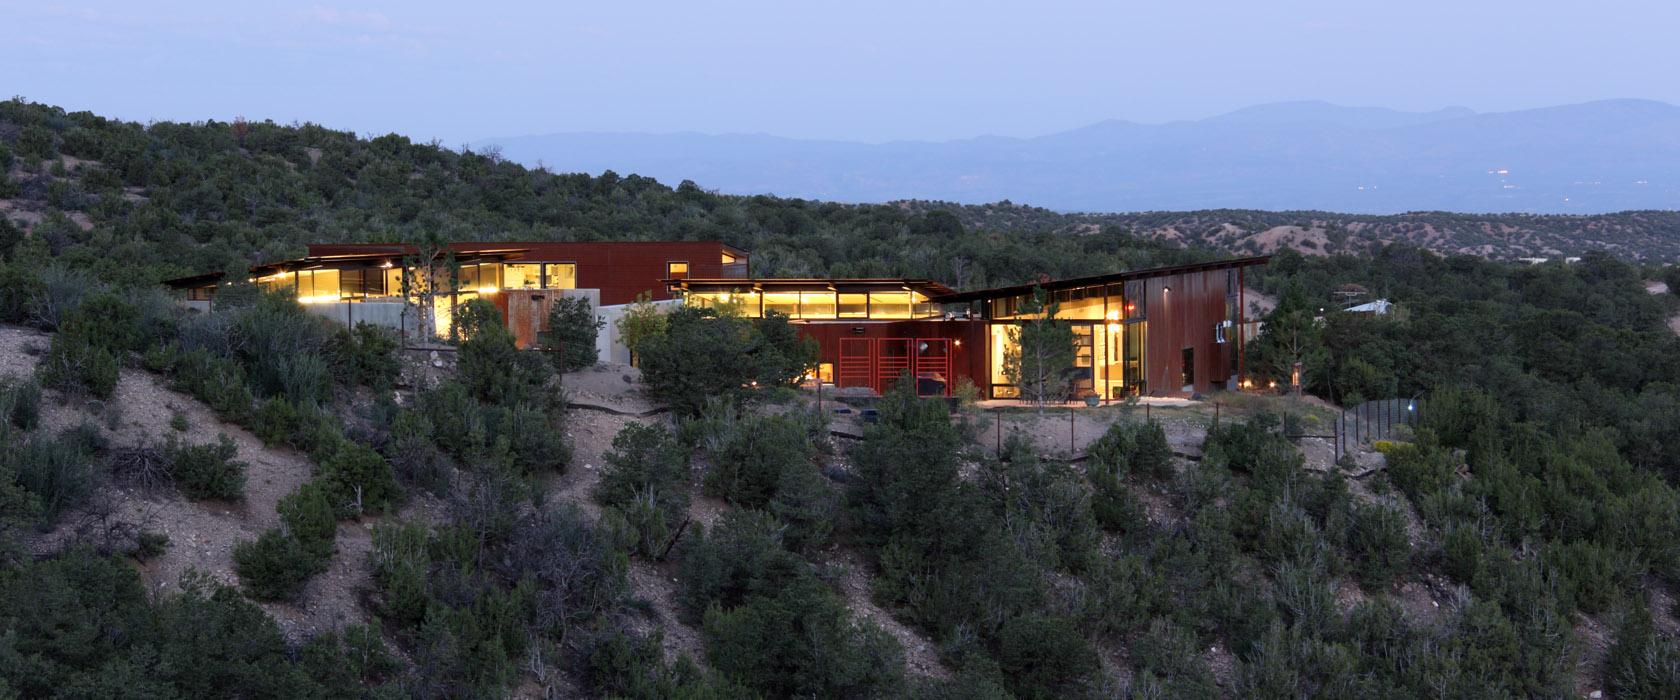 Hills, Desert House in Santa Fe, New Mexico